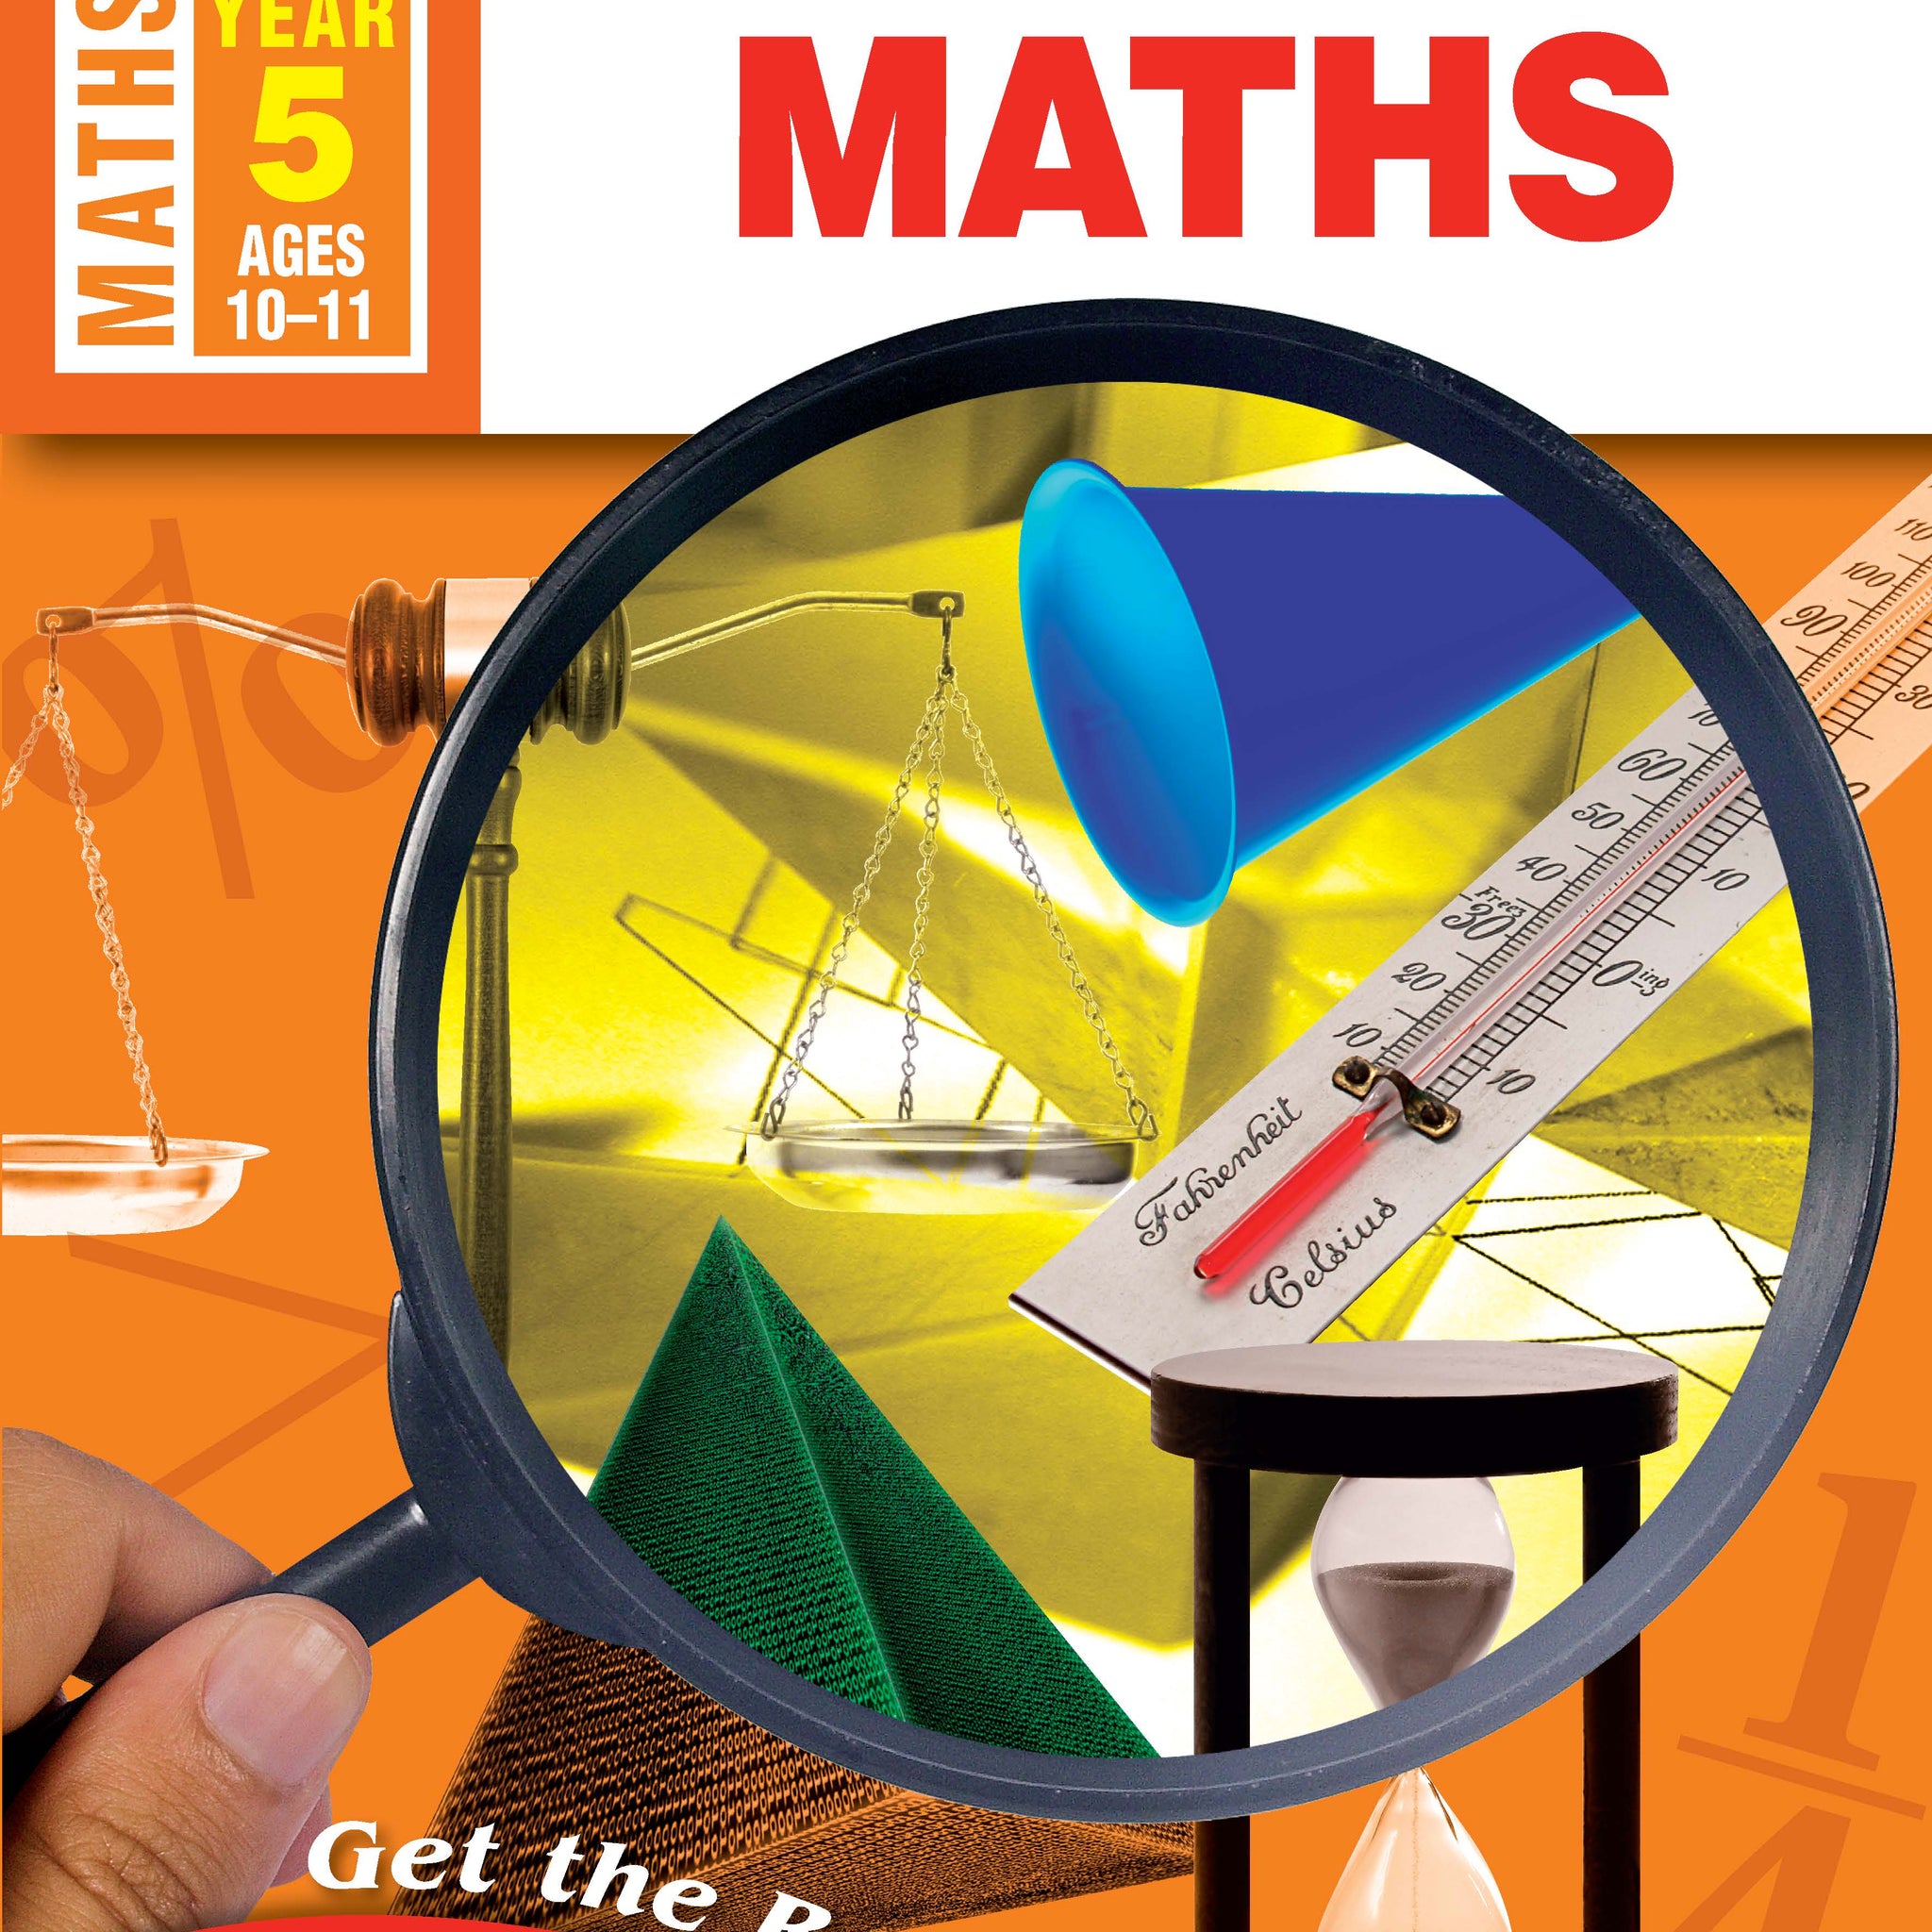 Excel Advanced Skills Workbook: Start Up Maths Year 5